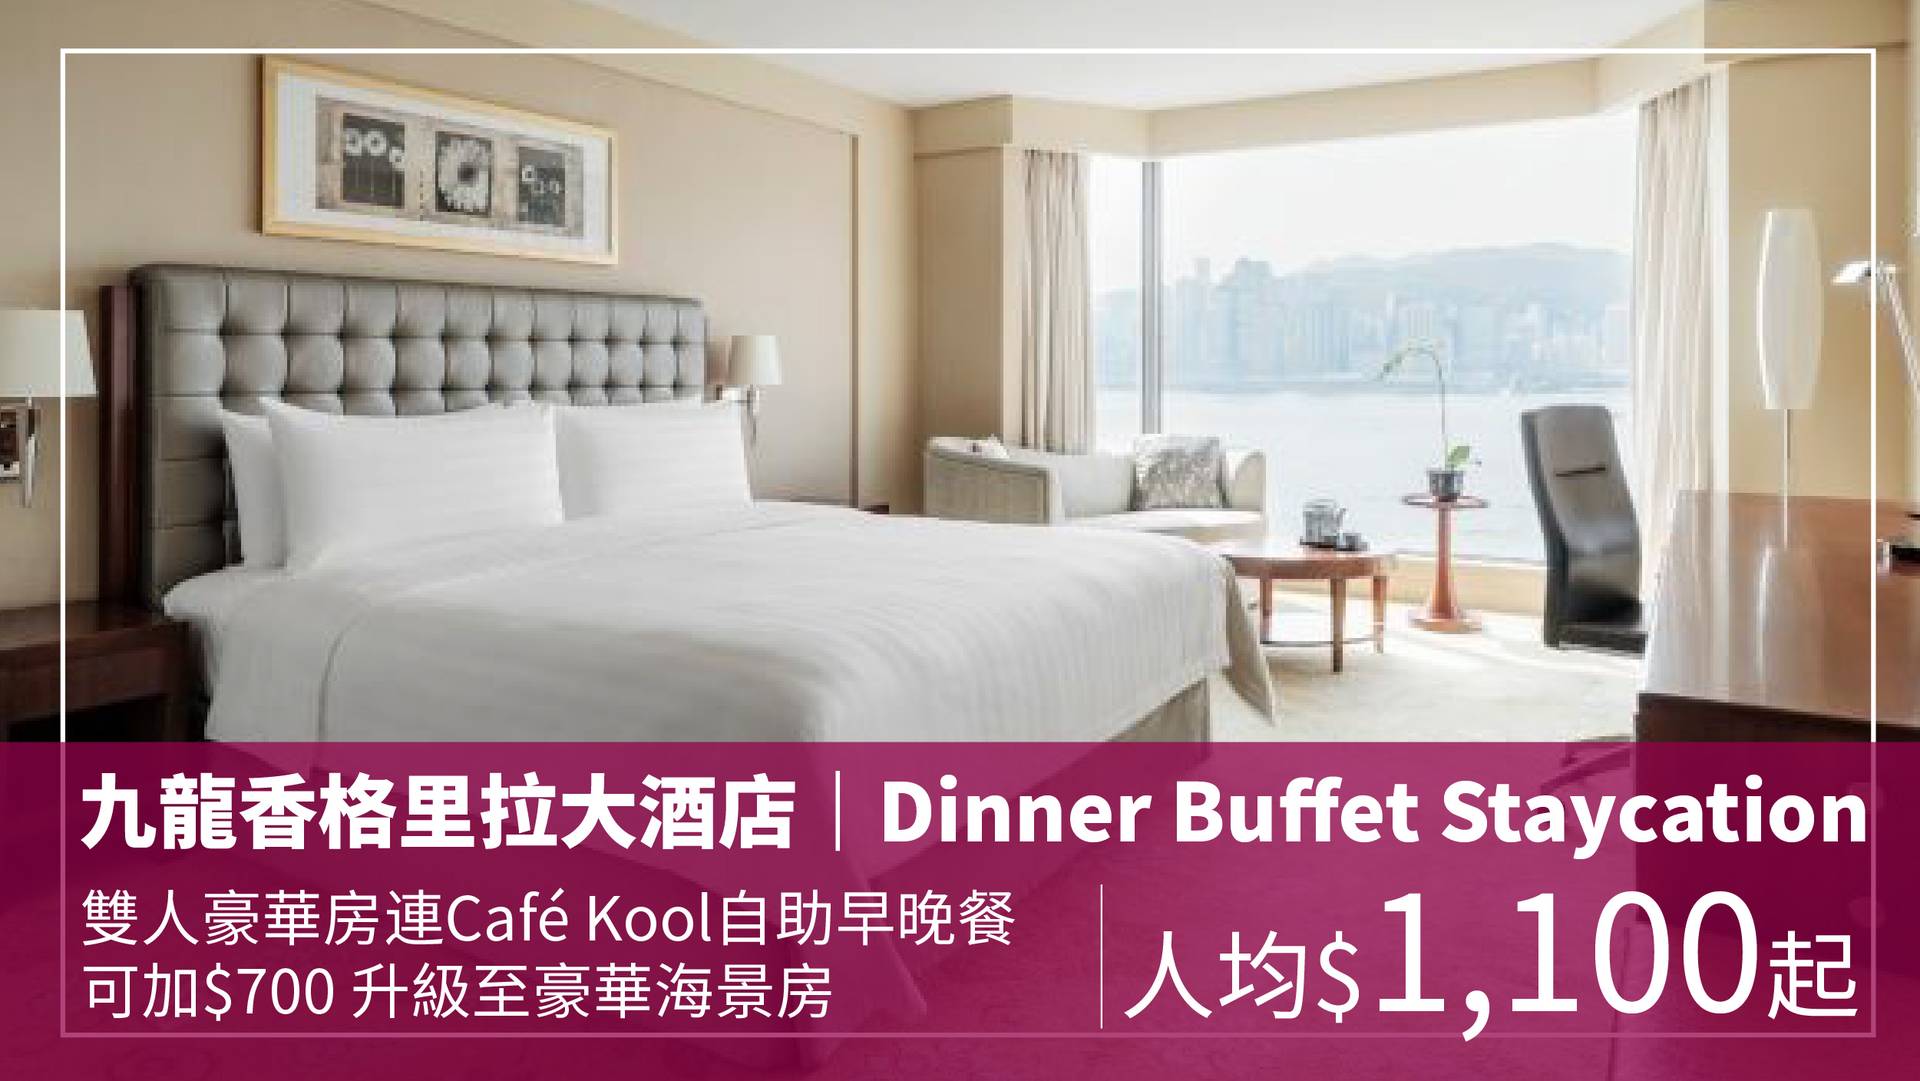 九龍香格里拉大酒店 Dinner Buffet Staycation 自助早餐、自助晚餐住宿套票（需3個工作天前預訂）